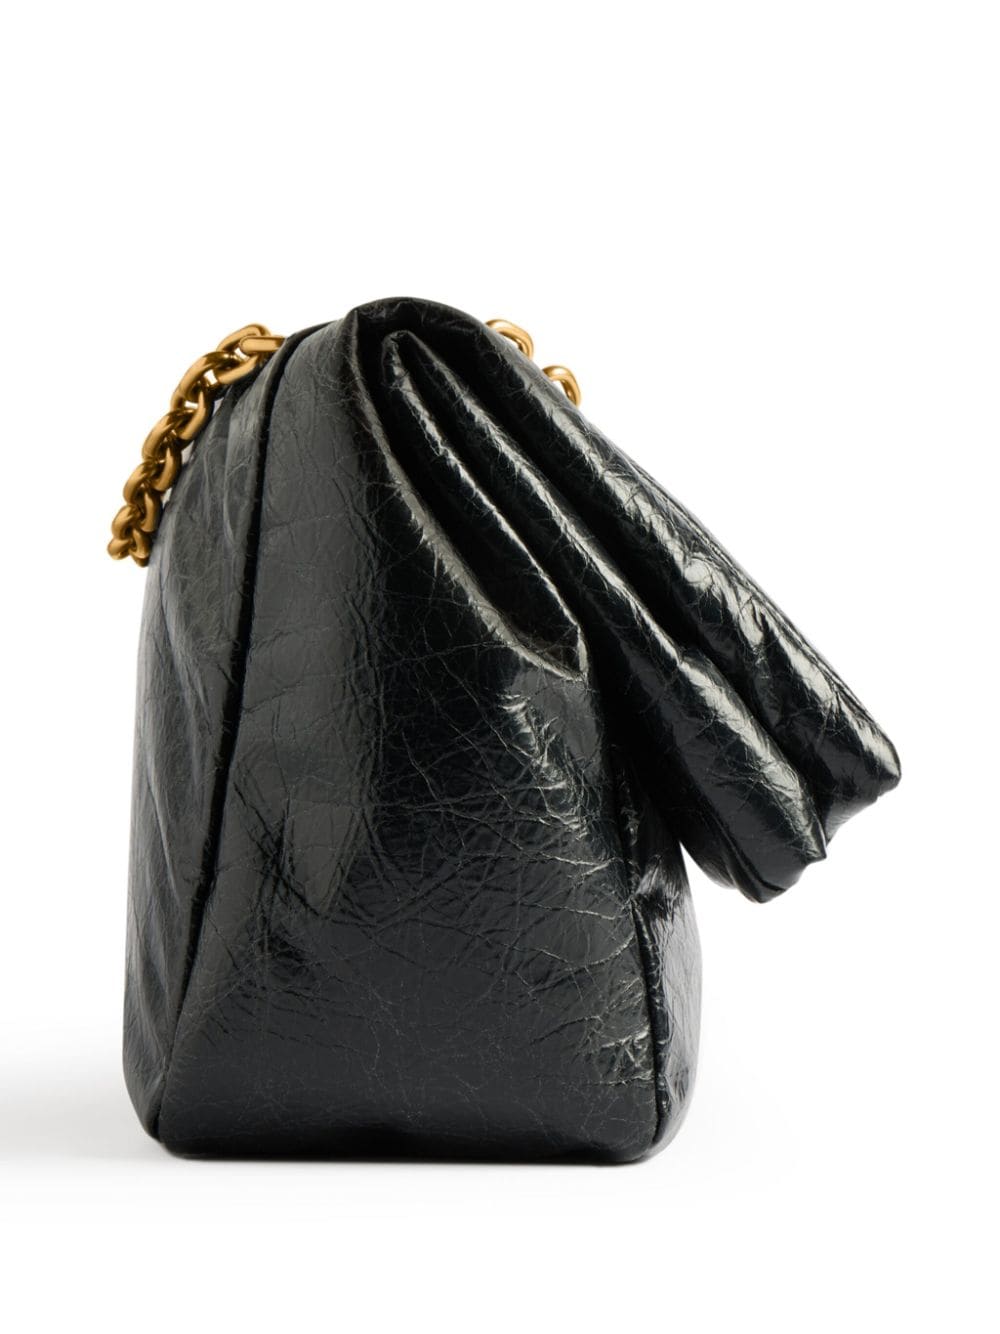 حقيبة كتف موناكو ميني من جلد العجل الأسود مع تفاصيل ذهبية قديمة، بقياس 11x7x4 إنش